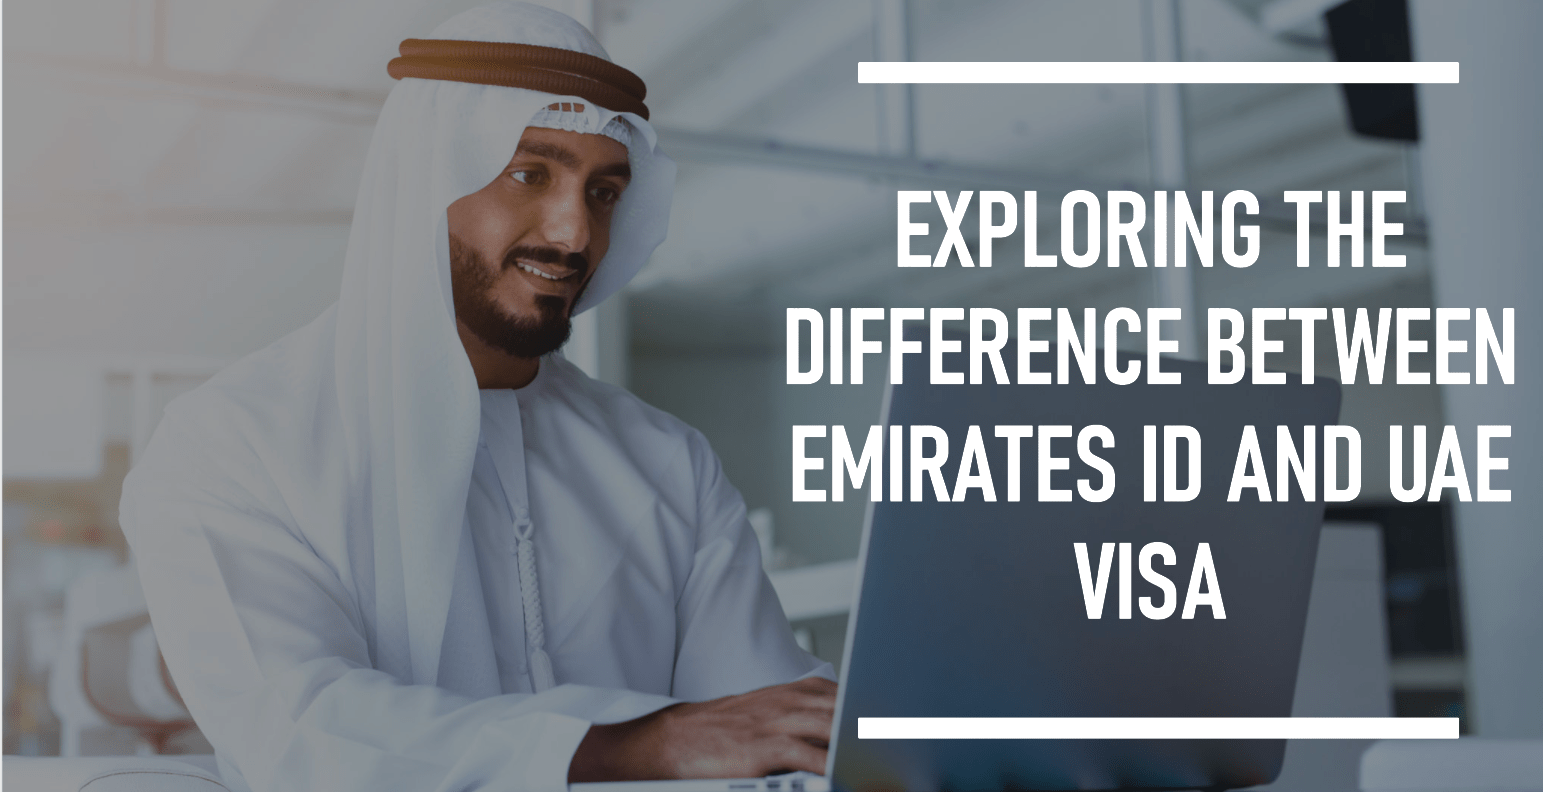 Emirates ID And UAE Visa